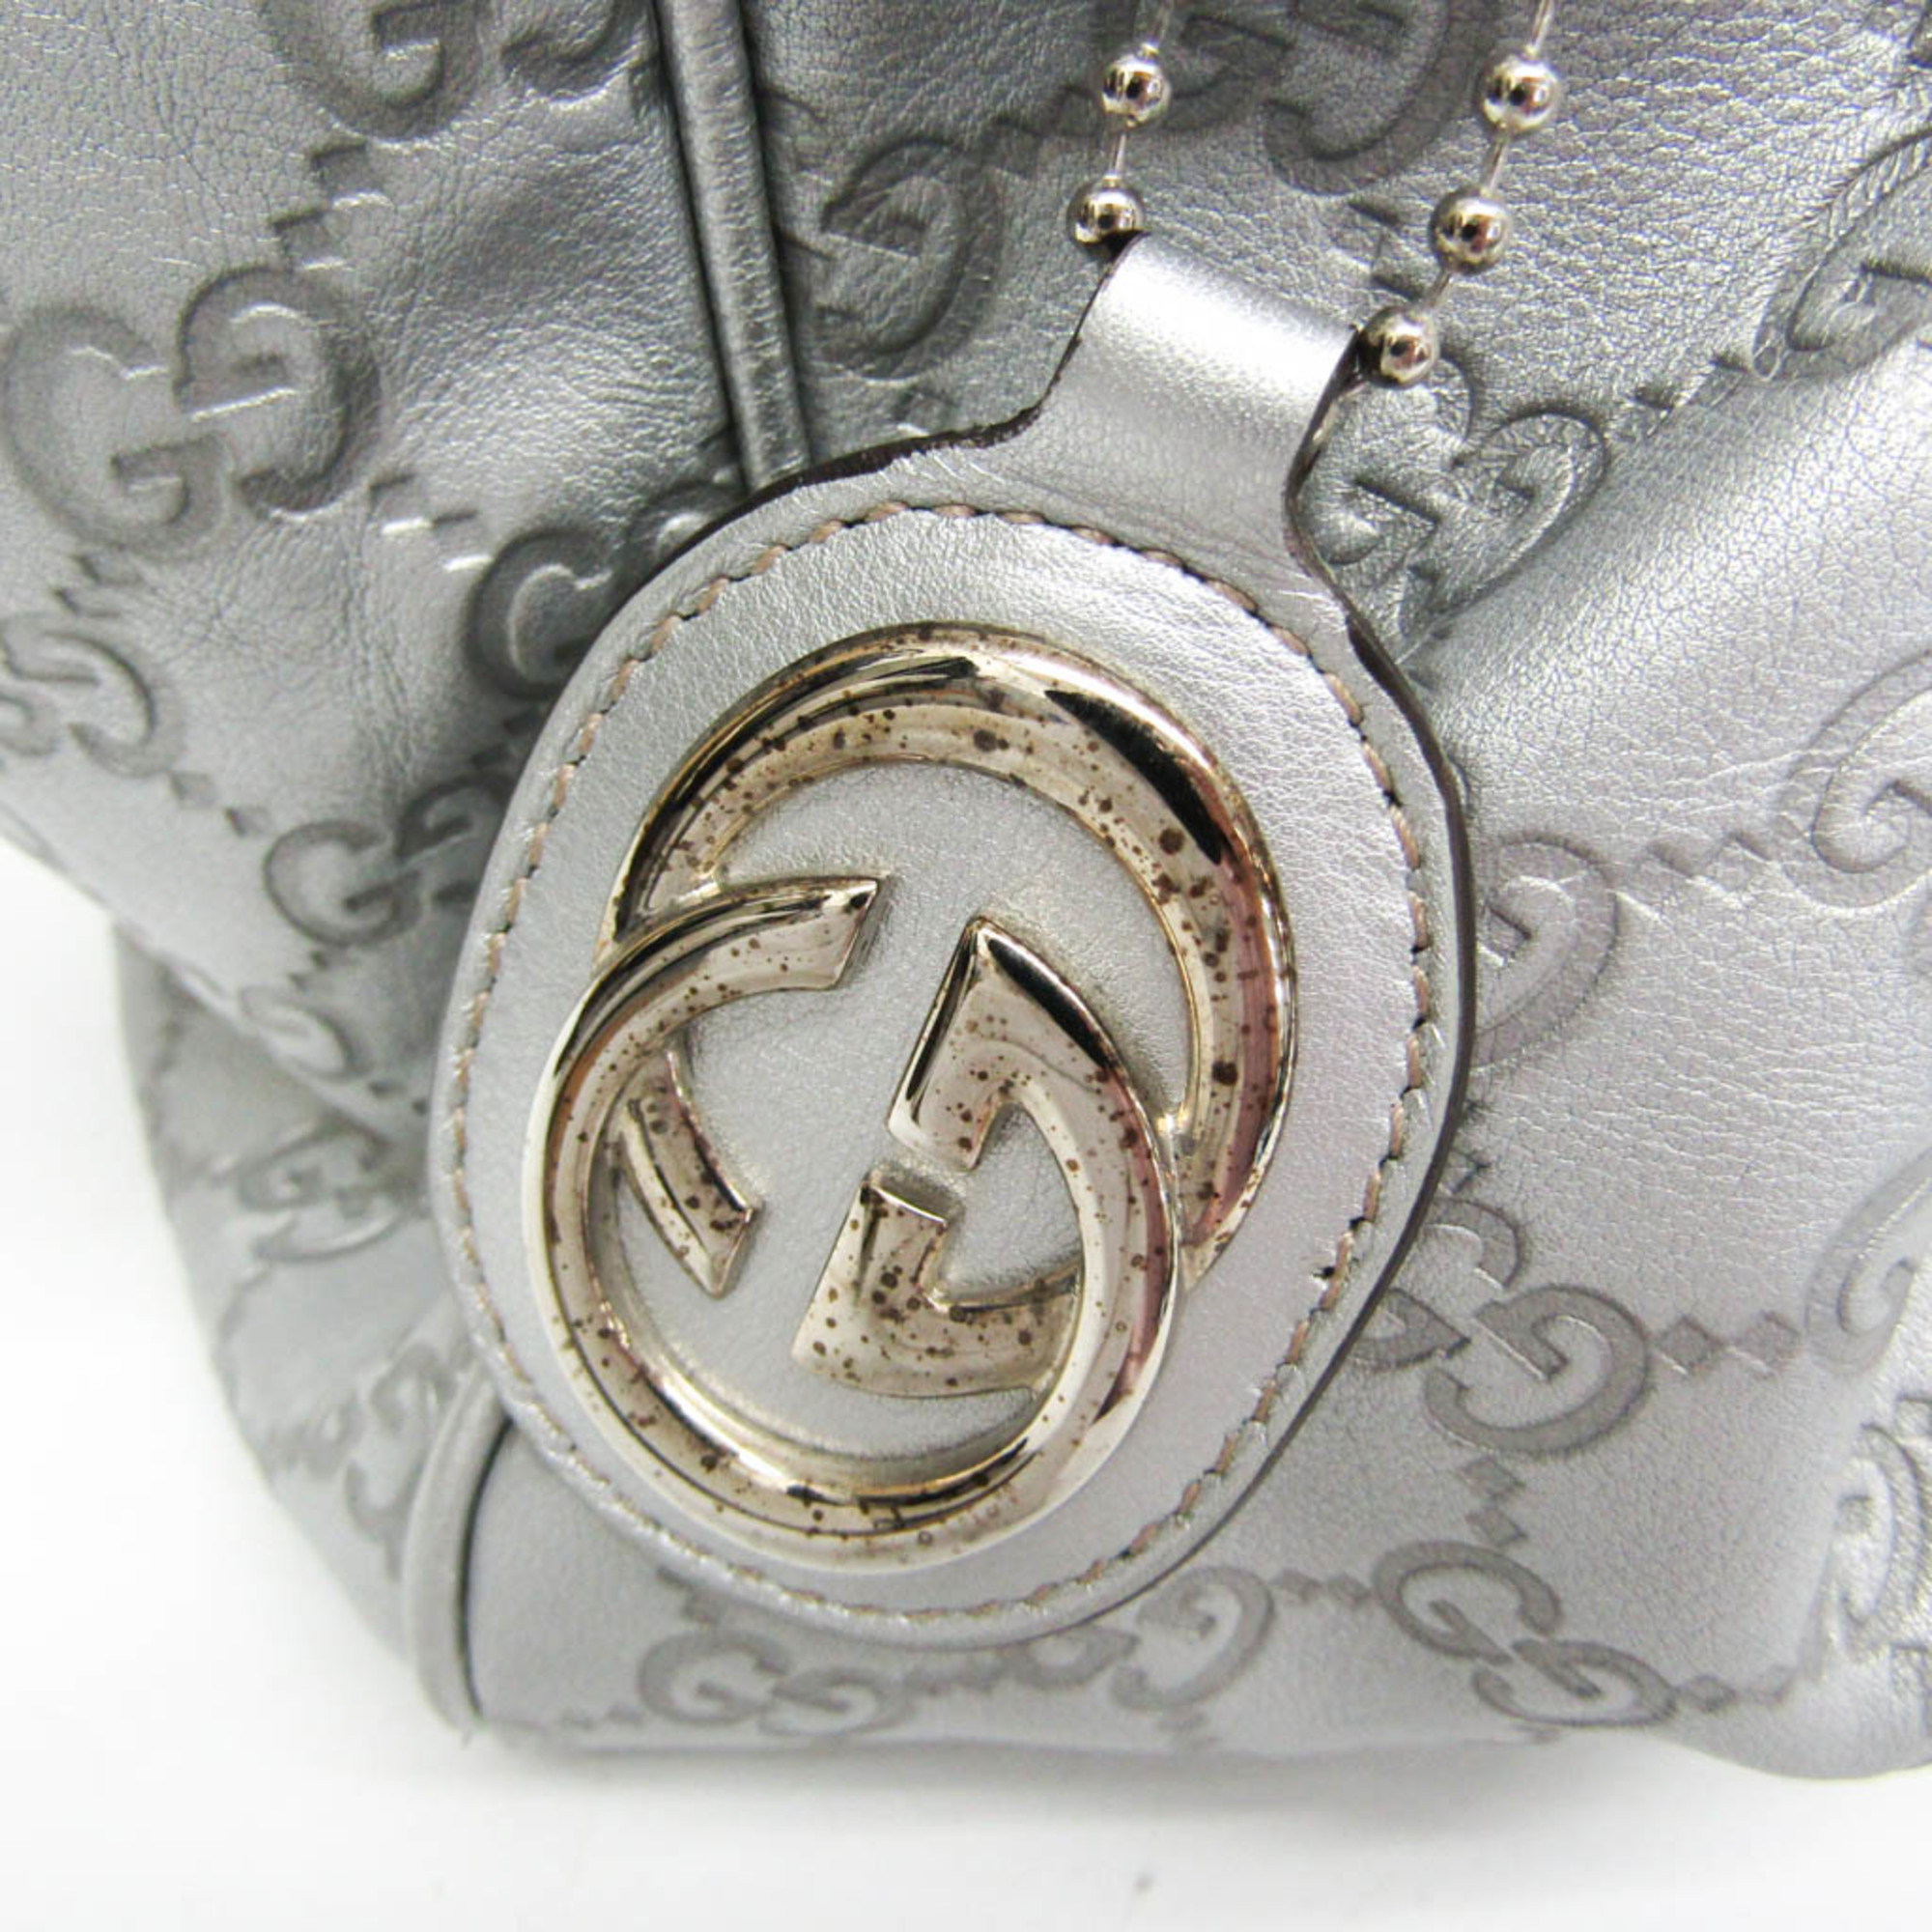 Gucci Guccissima Sukey 211944 Women's Leather Handbag Silver